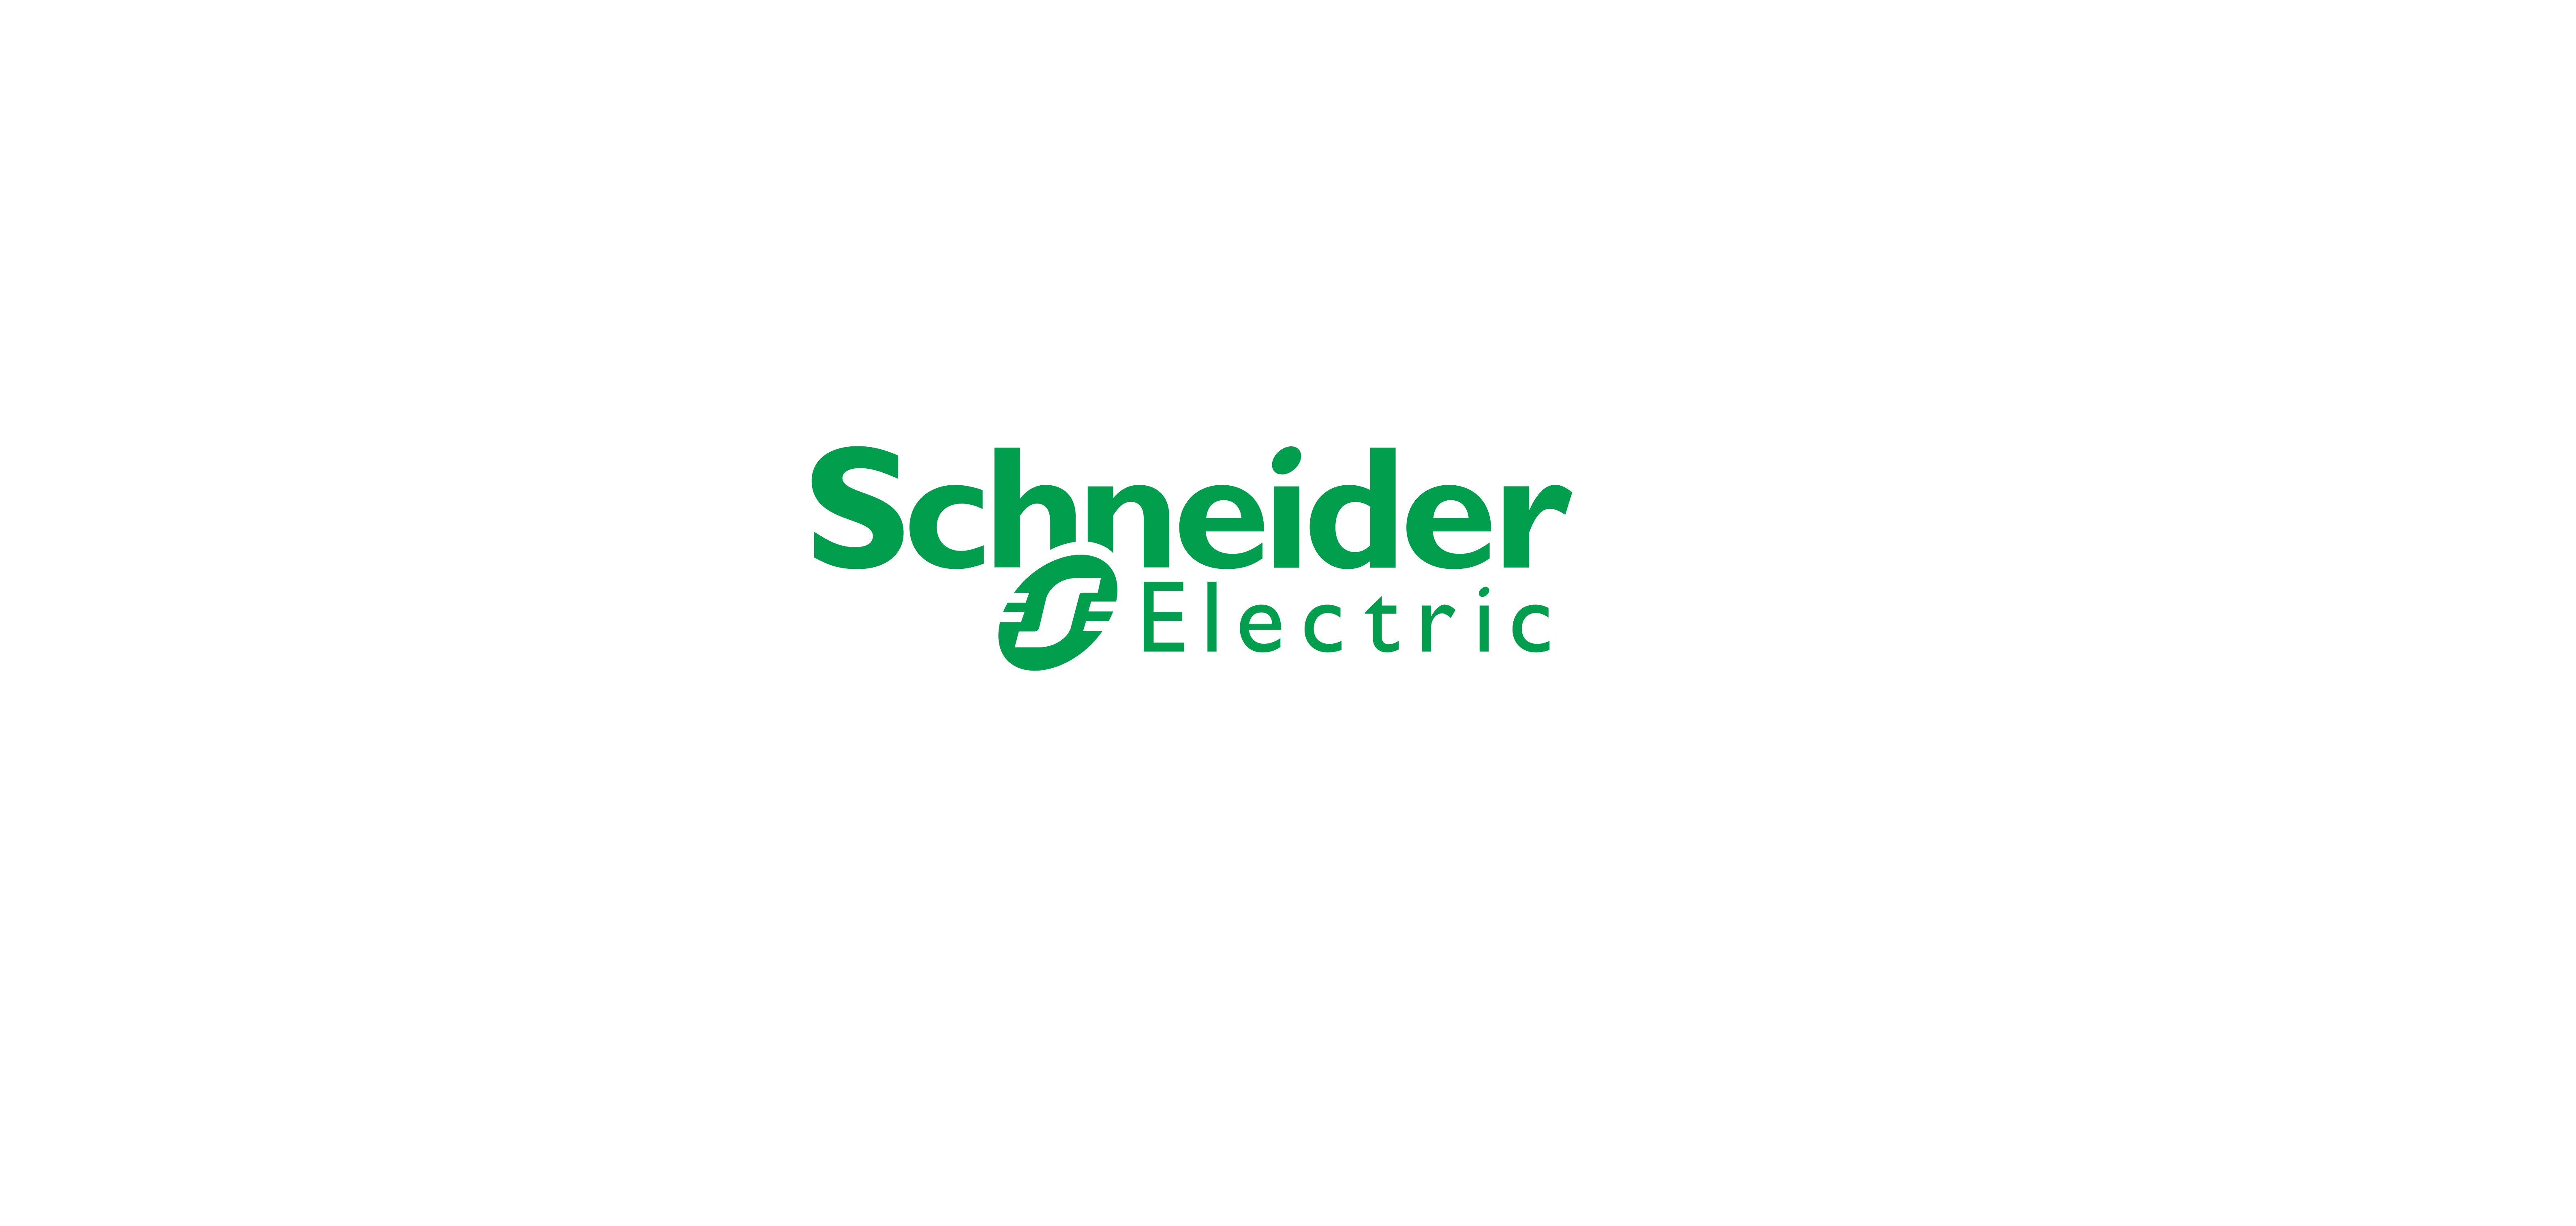 فروش انواع  تجهیزات و محصولات اشنایدر  Schneider    